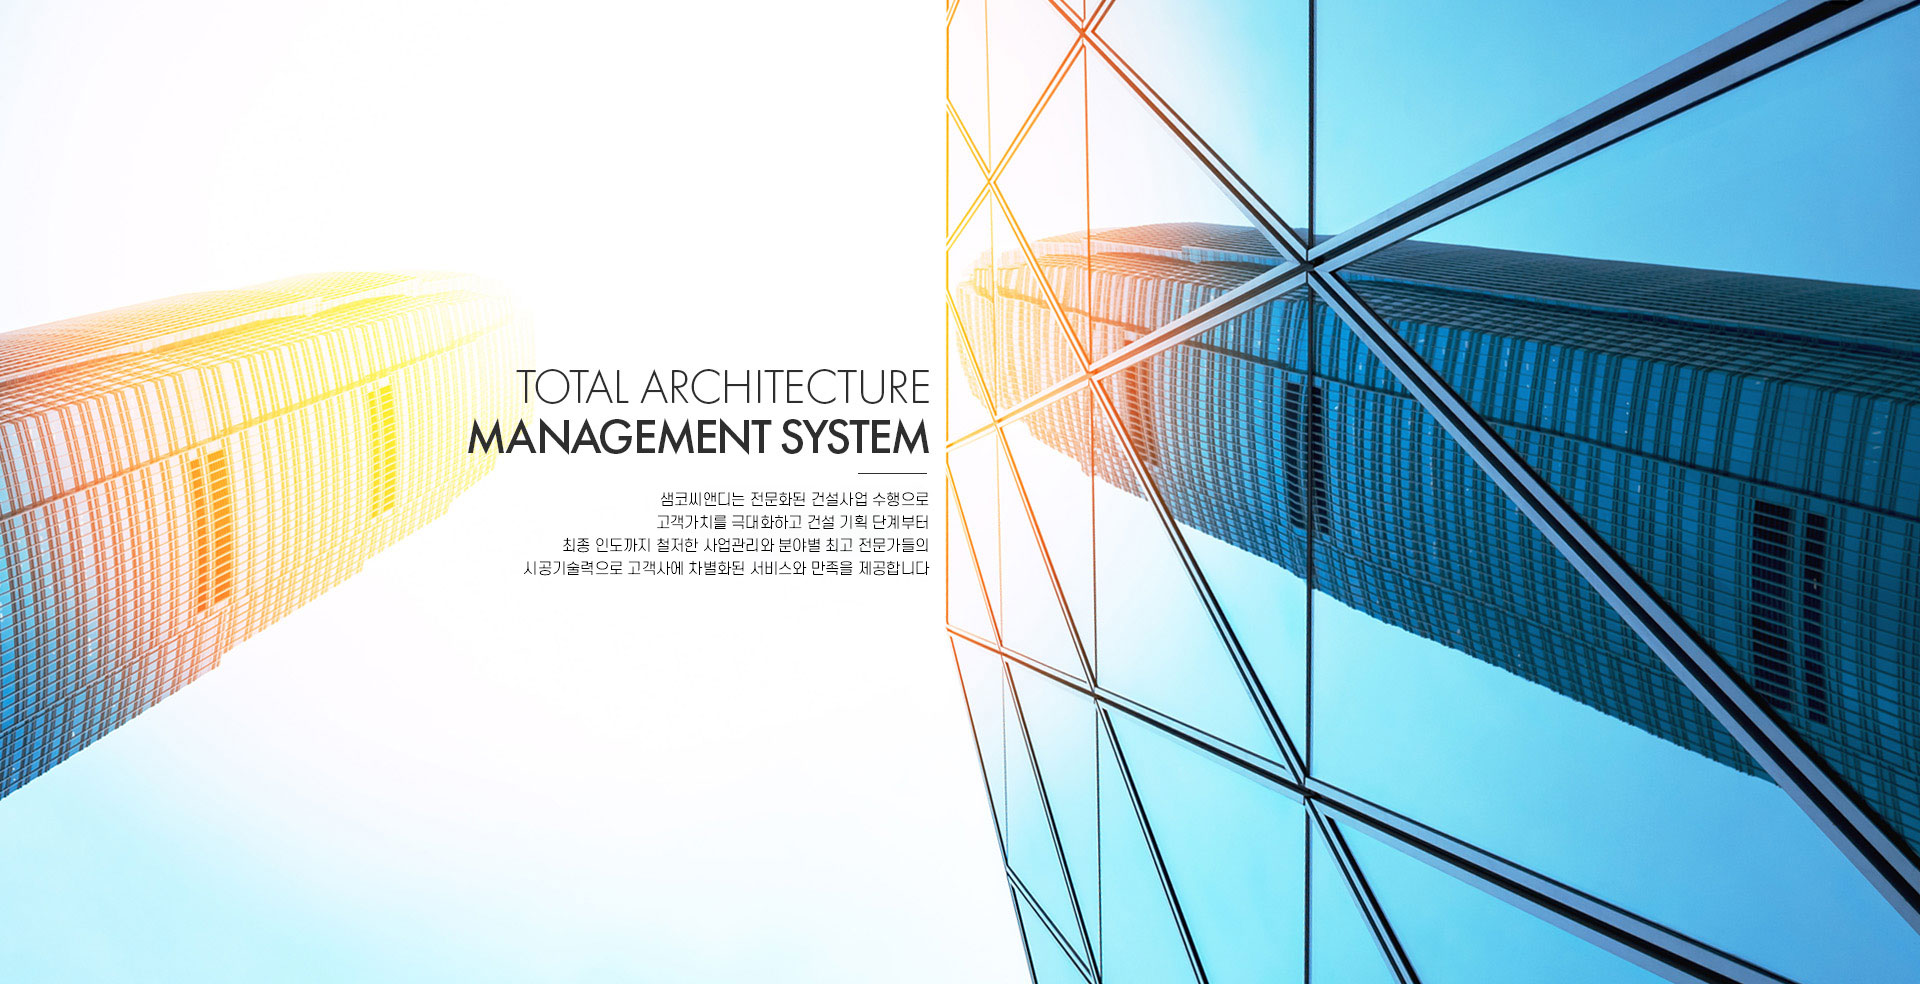 Total Architecture Management System
고객을 위한 One-Stop 서비스,
SAMCO의 체계적인 시스템은 고객의 자산에
가치를 더합니다.